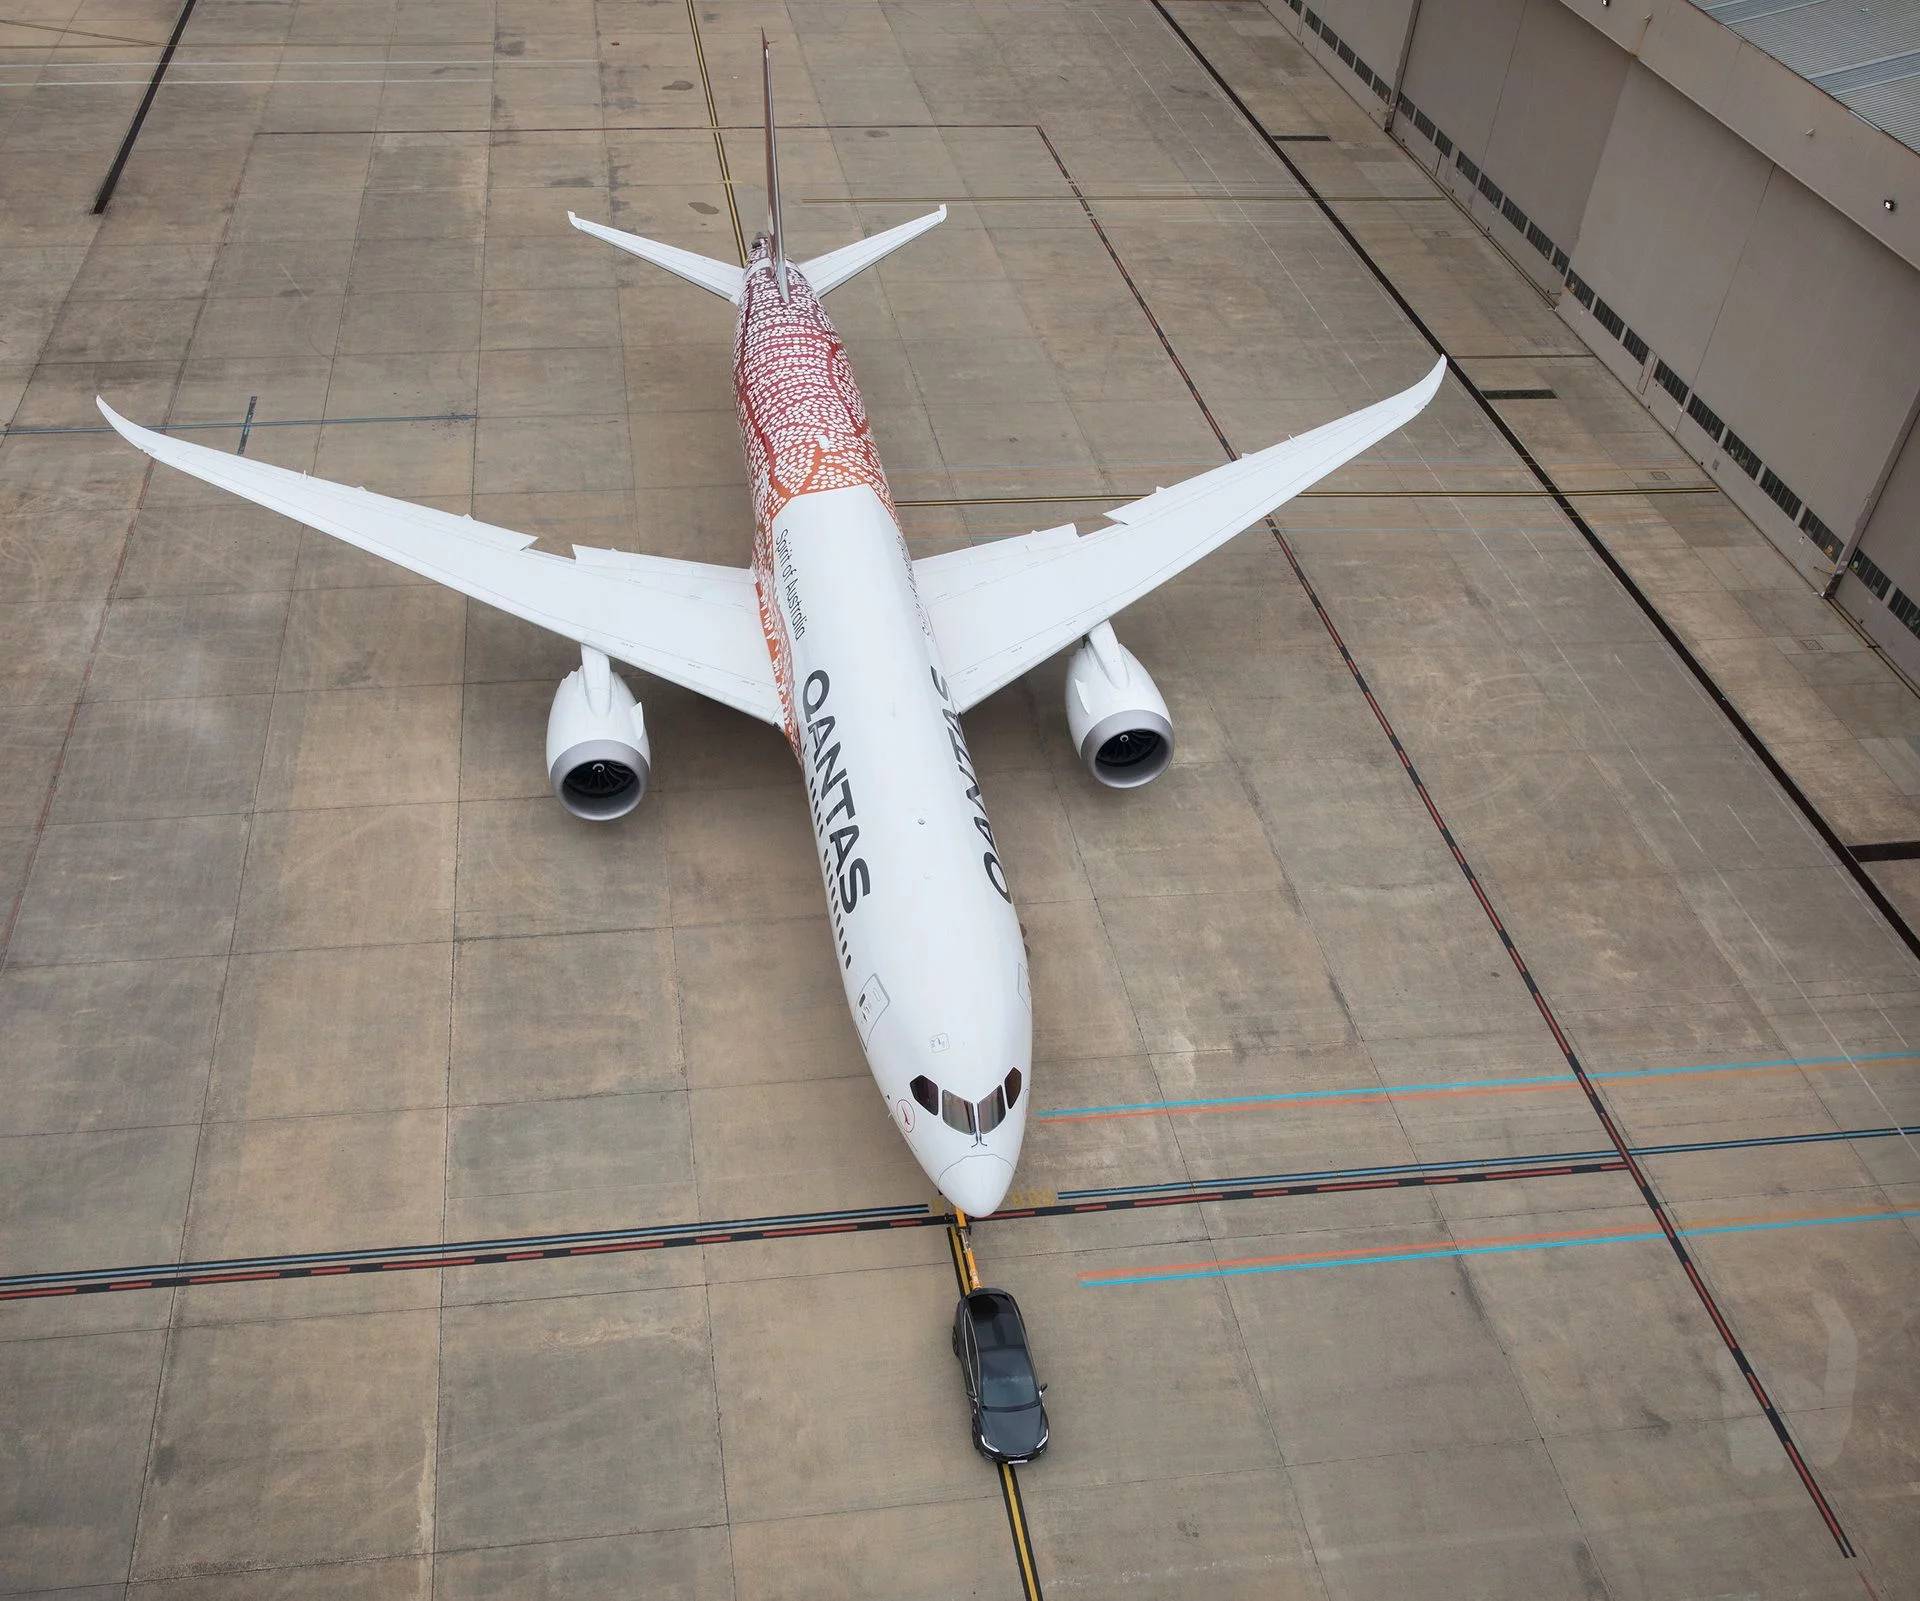 شاهد تيسلا موديل X تسحب طائرة بوينغ عملاقة تزن 130 طن! 6